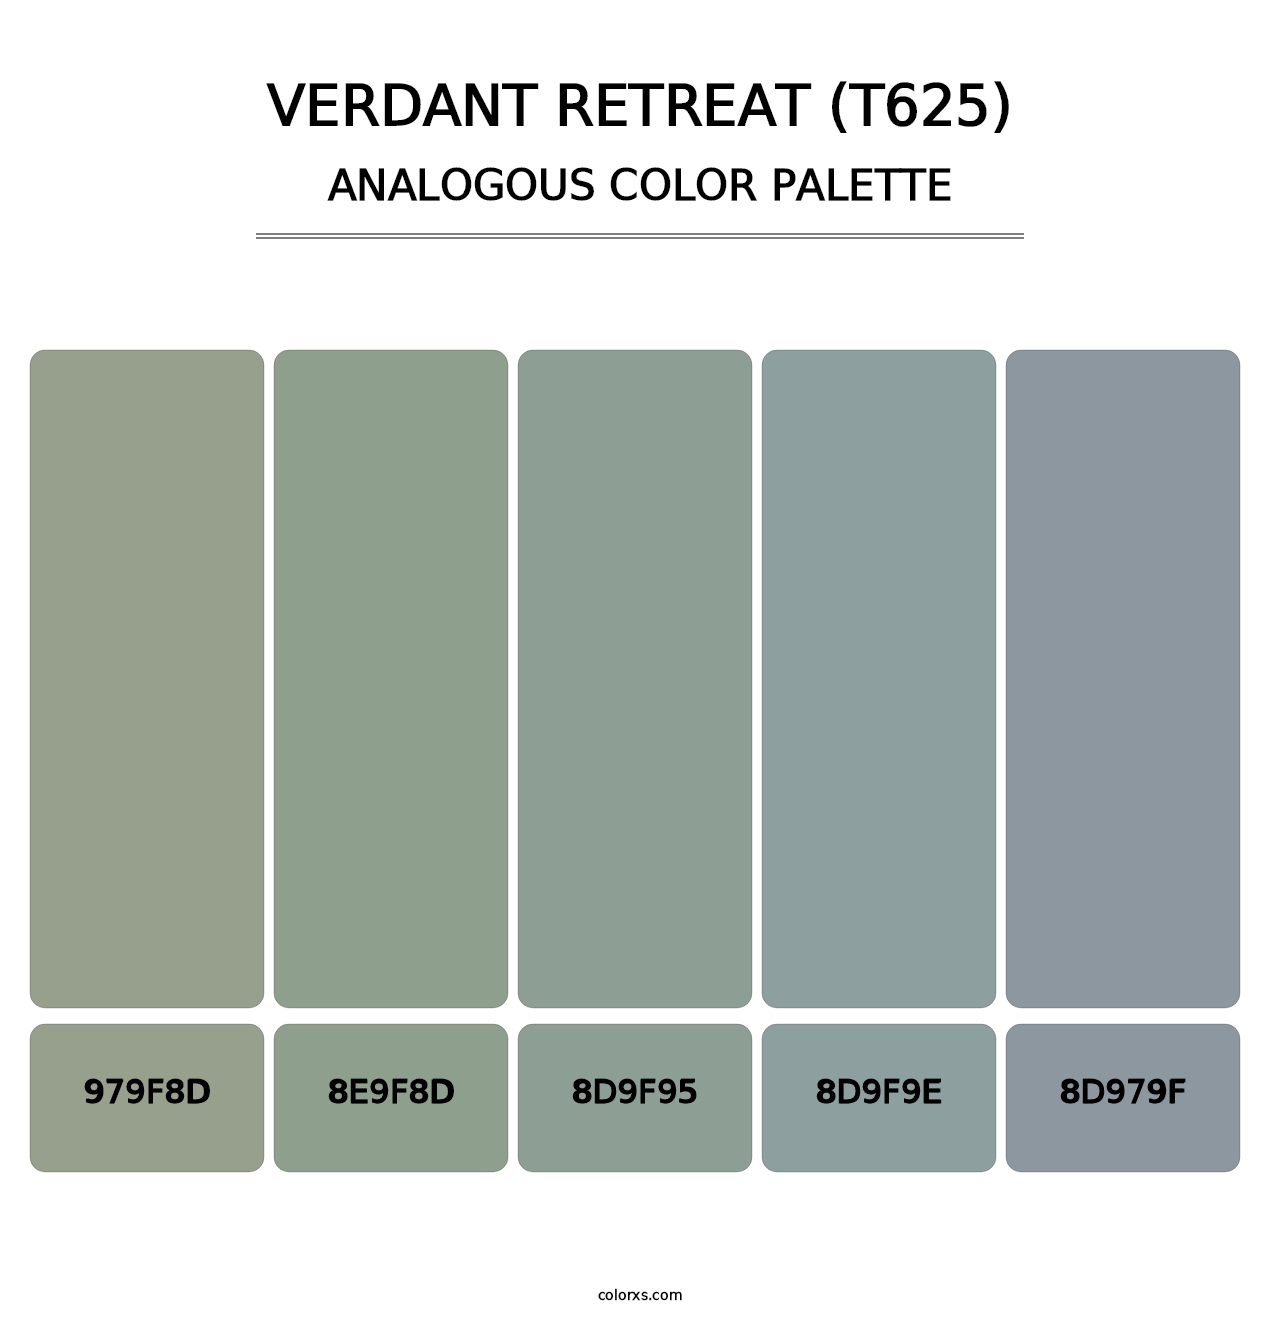 Verdant Retreat (T625) - Analogous Color Palette